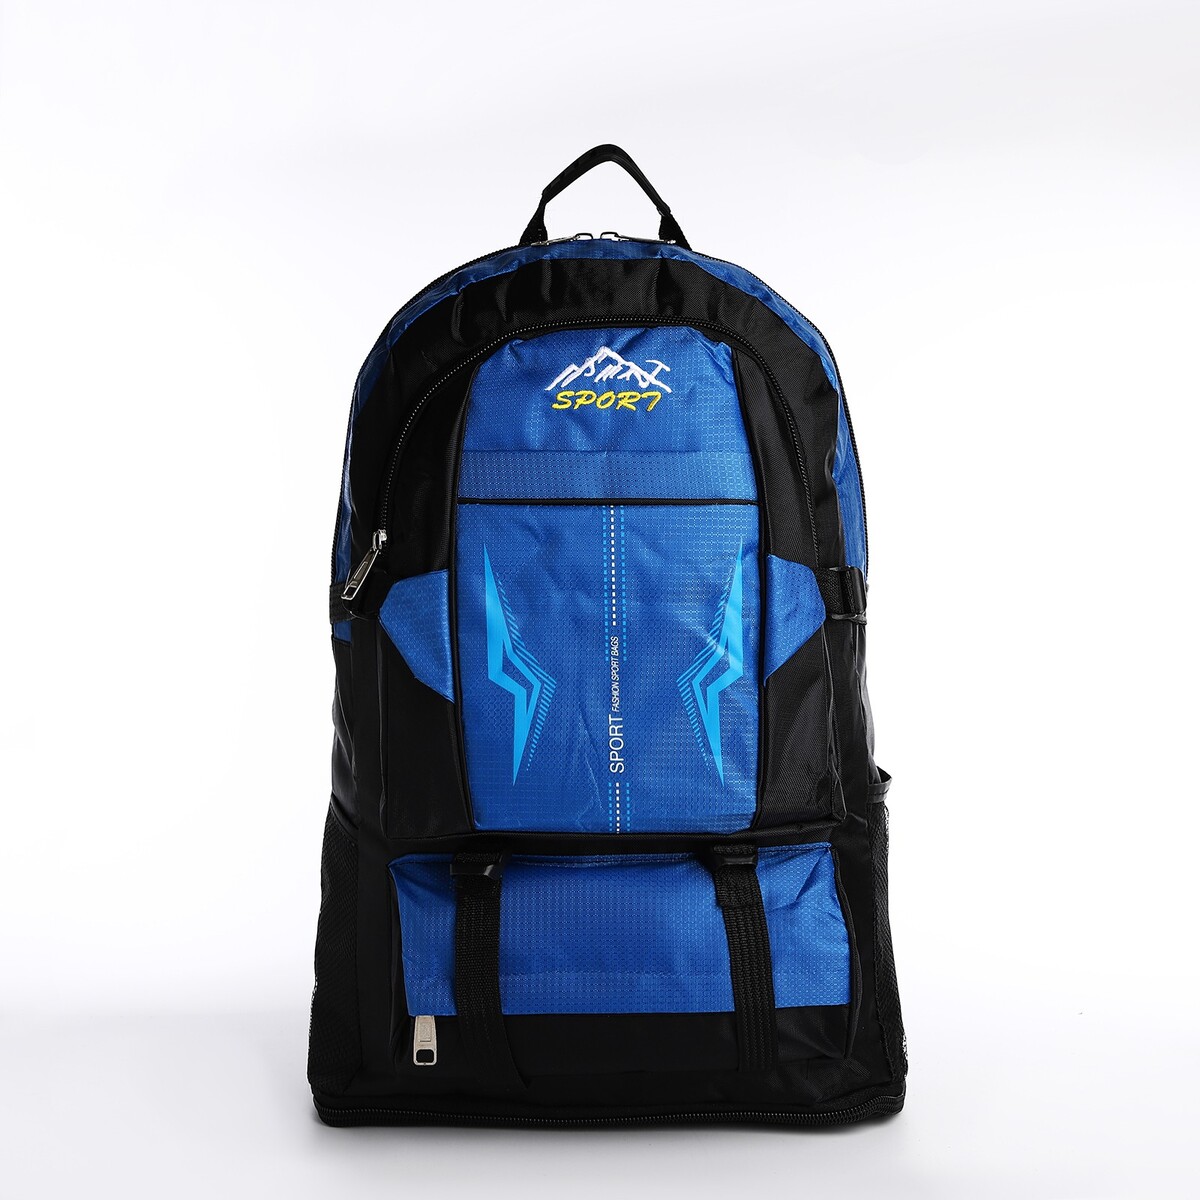 Рюкзак на молнии с увеличением, 65л, 4 наружных кармана, цвет синий рюкзак туристический на молнии 4 наружных кармана синий